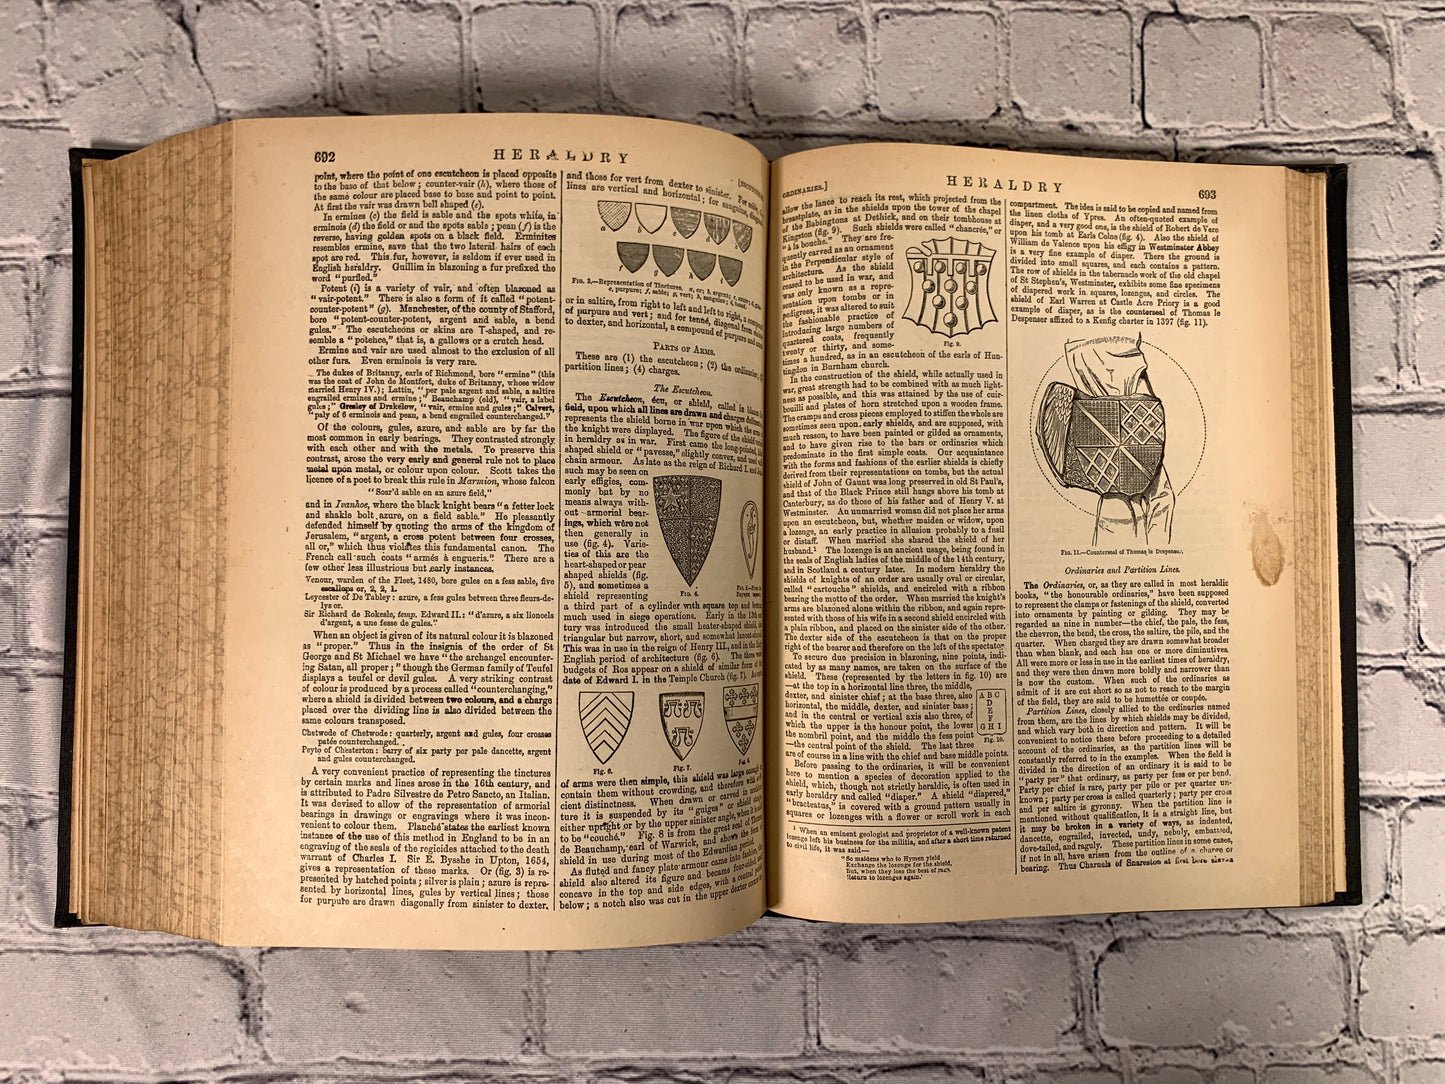 The Encyclopedia Britannica New Werner Edition Twentieth Century Vol XI [1903]